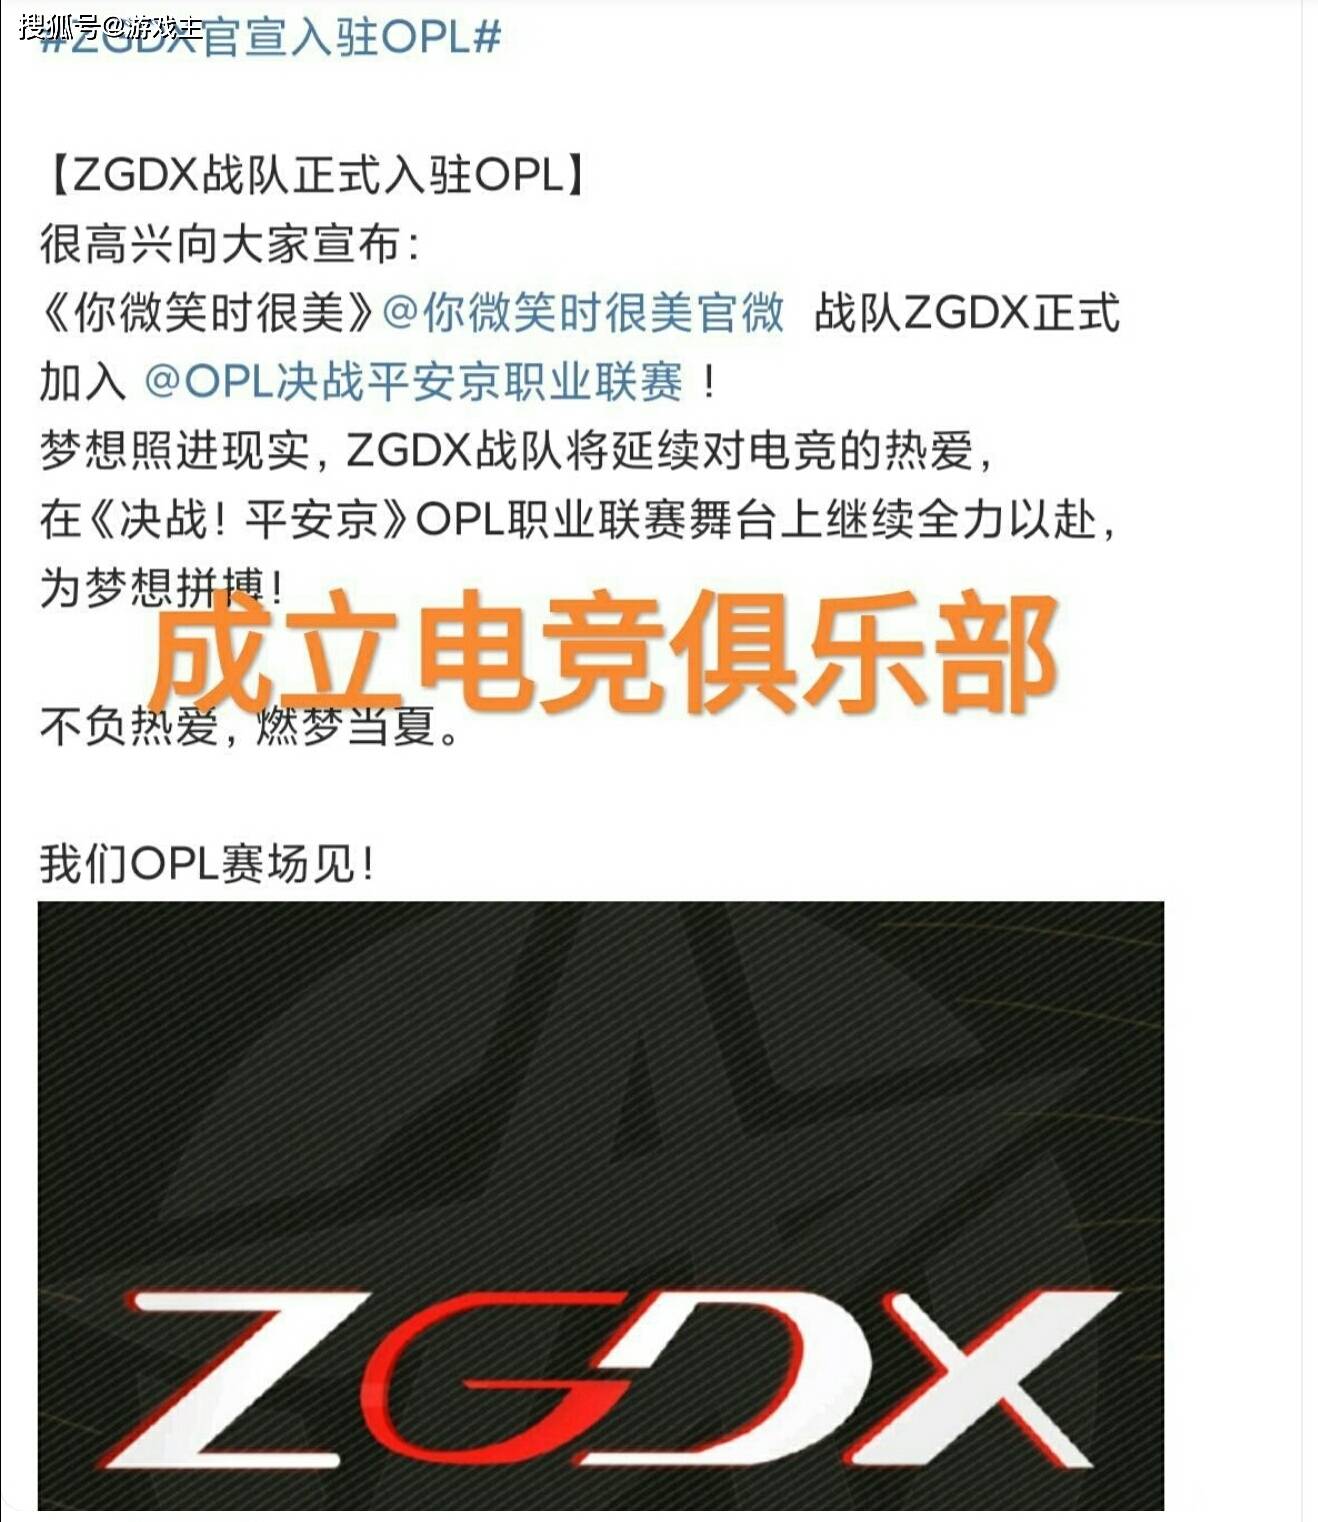 原创ZGDX战队正式成立，战队图标引热议，LGD战队选择维权